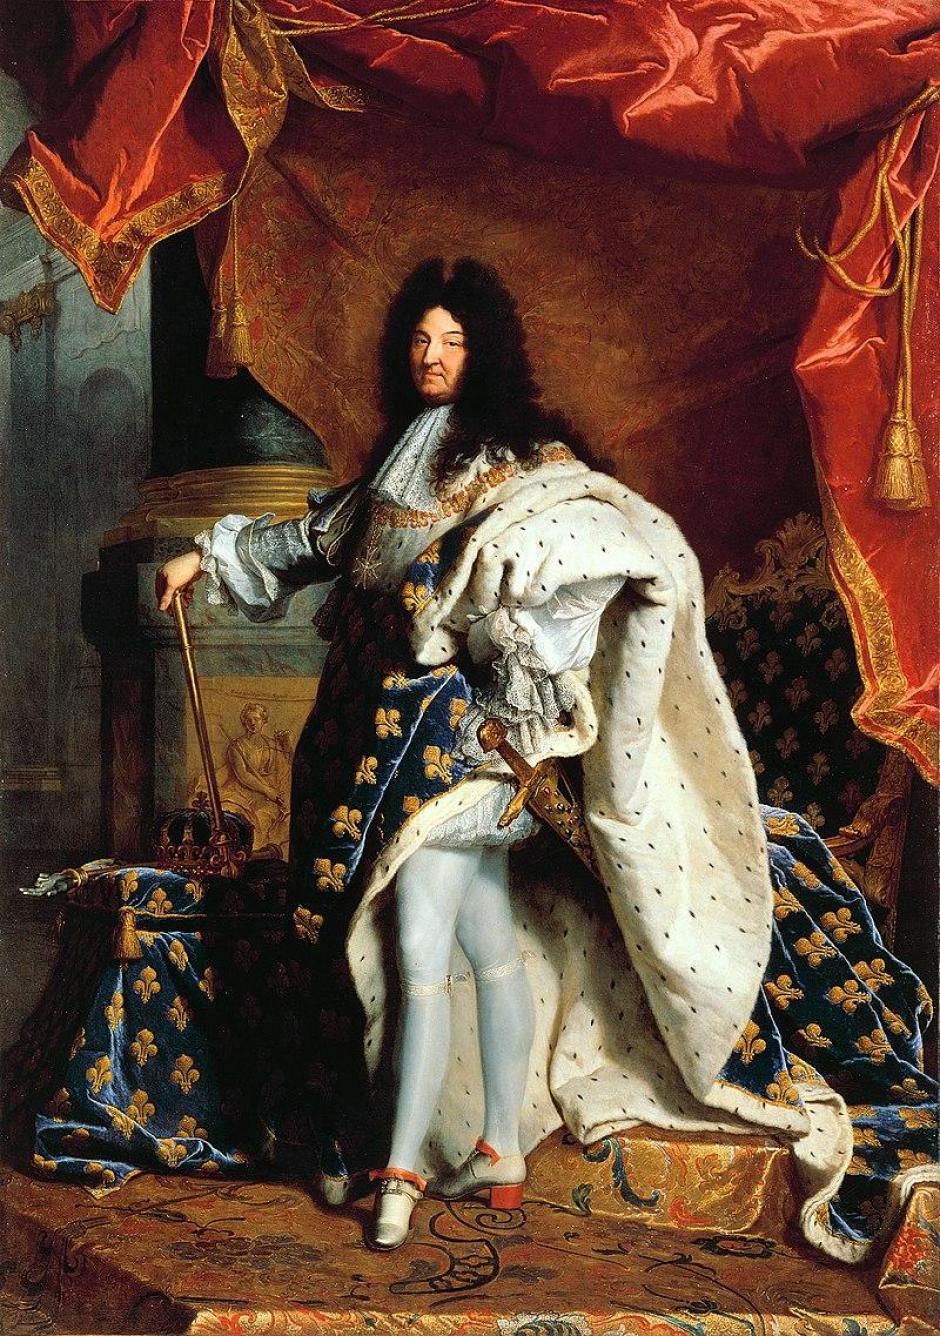 Luis XIV de Francia: 72 años, 110 días. Conocido como Luis el Grande o el Rey Sol, el monarca francés se convirtió en rey el 14 de mayo de 1643 a la edad de cuatro años tras la muerte de su padre Luis XIII, y permaneció en el trono hasta el 1 de septiembre de 1715. Dejó el increíble legado de el Palacio de Versalles, aunque su país estaba endeudado después de los 13 años de la Guerra de Sucesión Española.